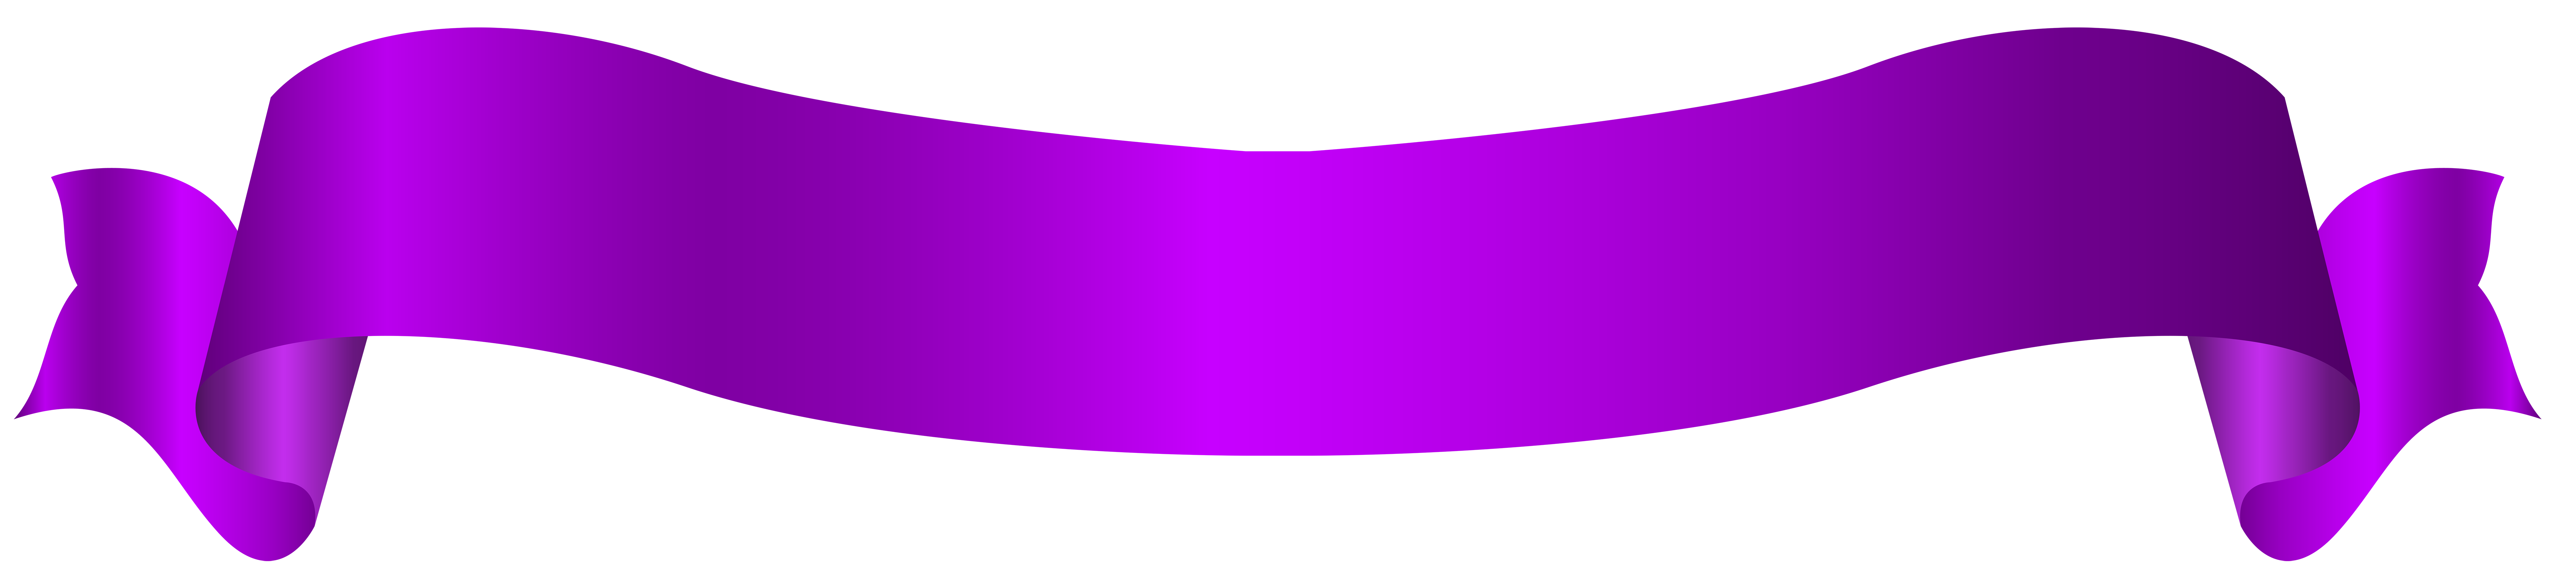 Violet Banner PNG Image